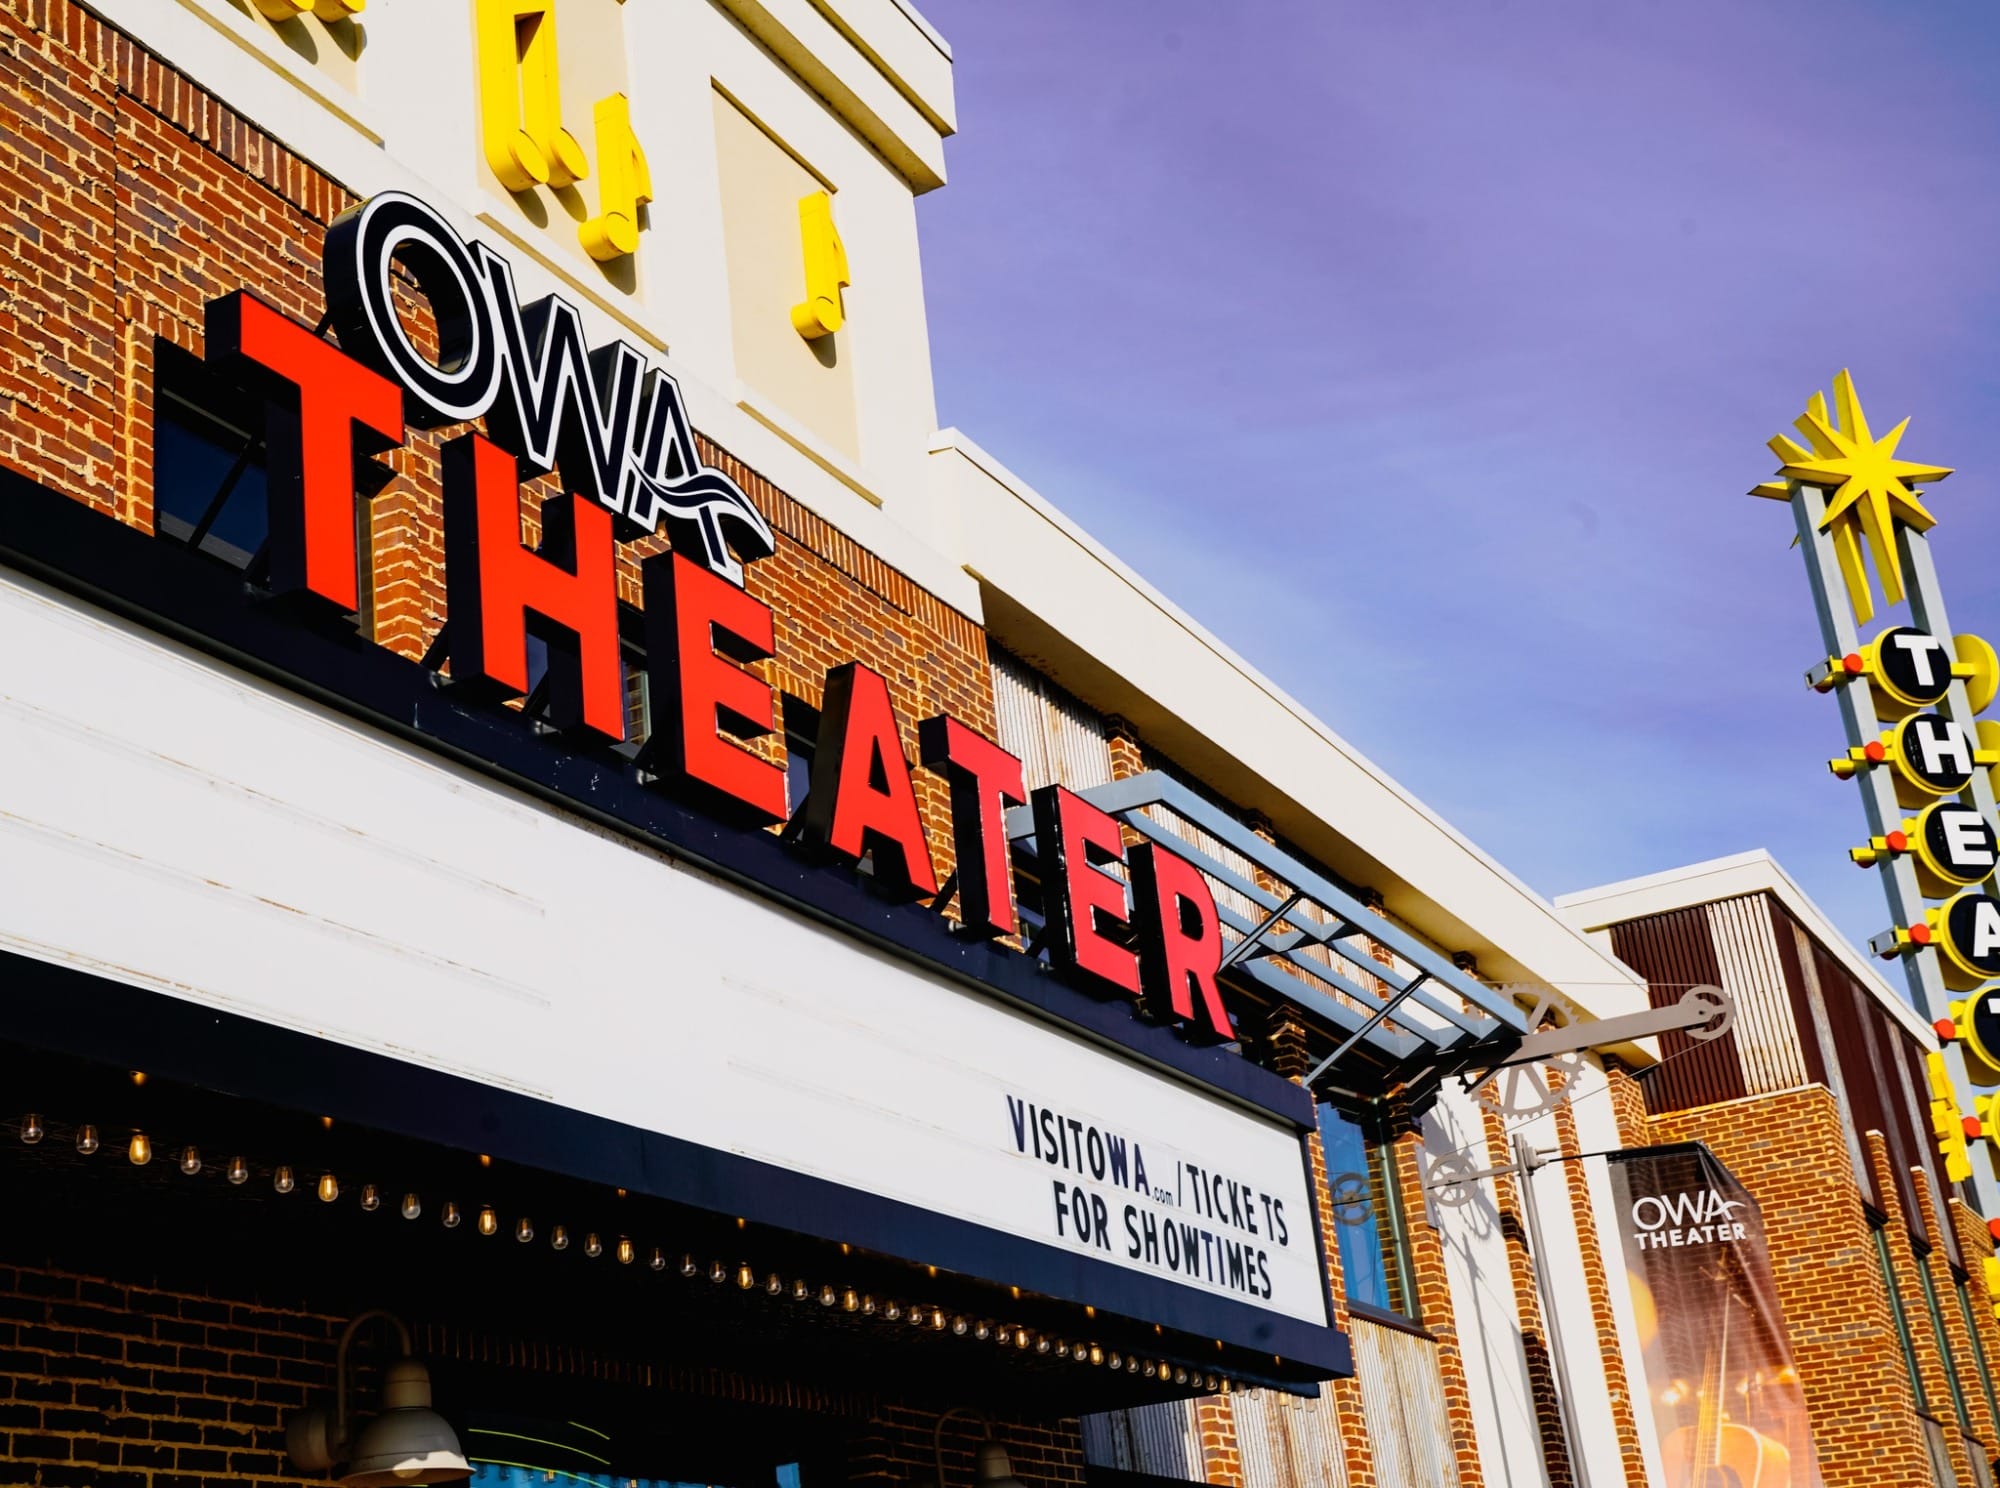 OWA Theater